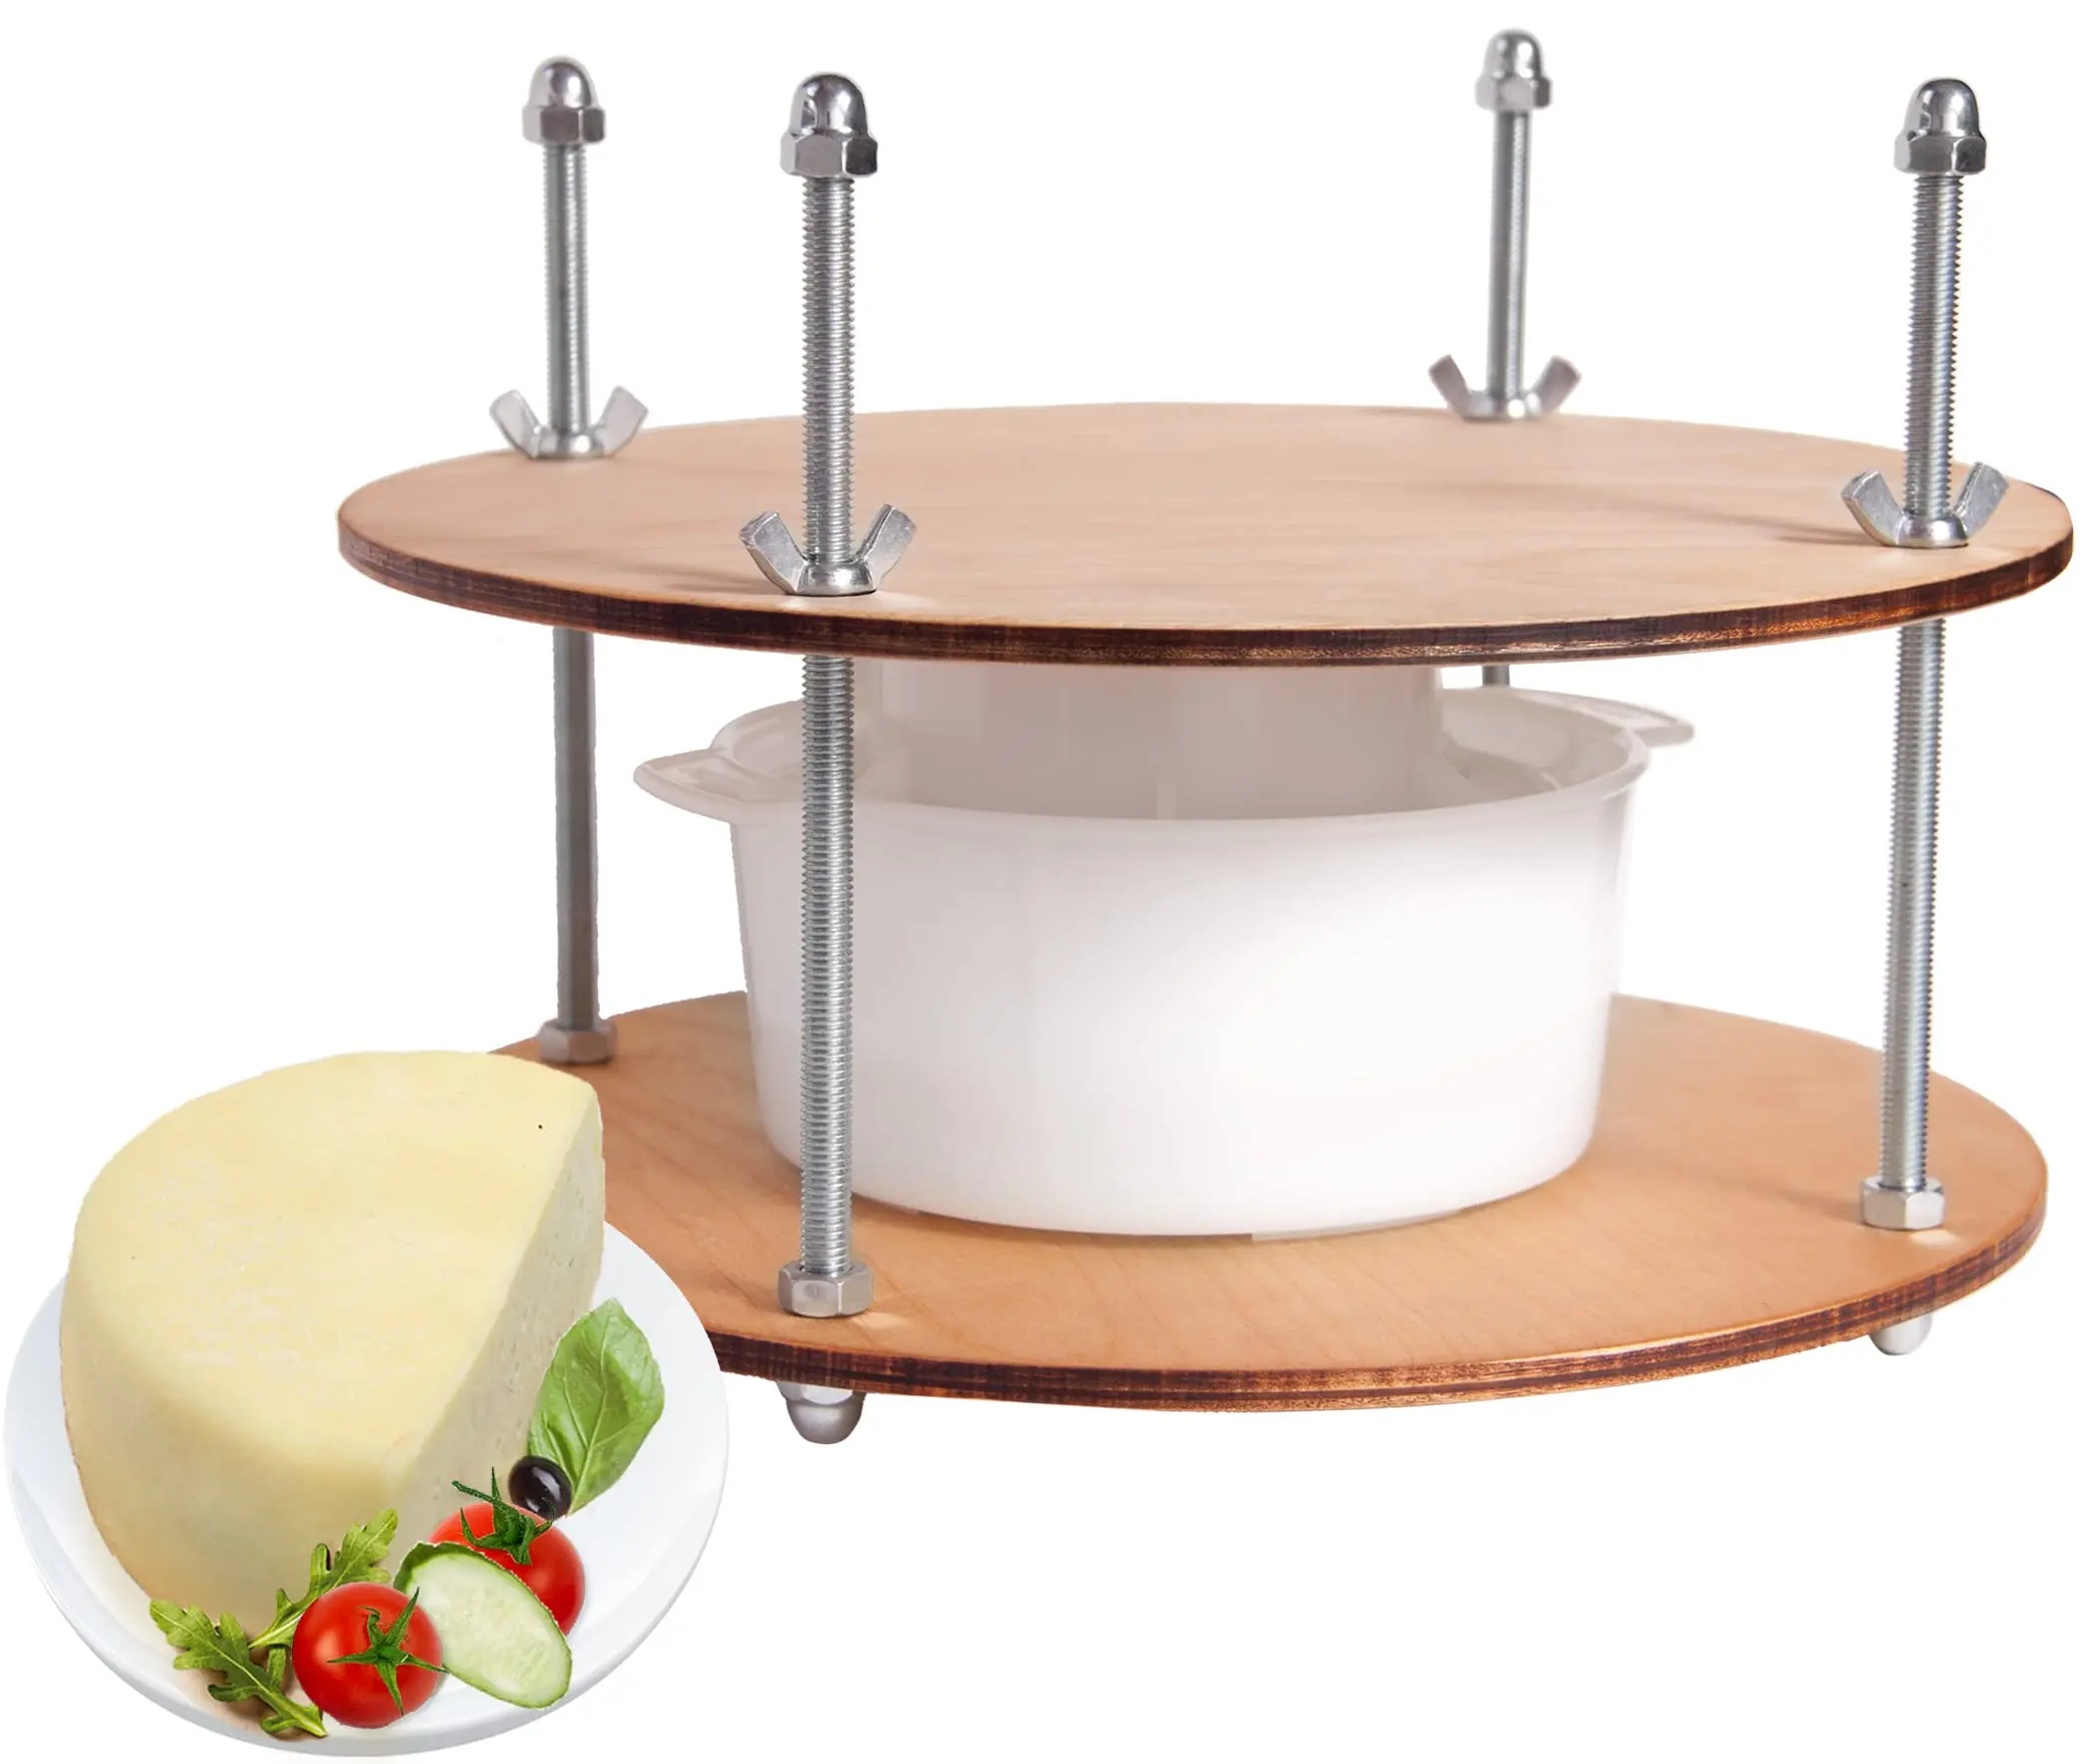 diametro de quesos - Cuánto mide un queso